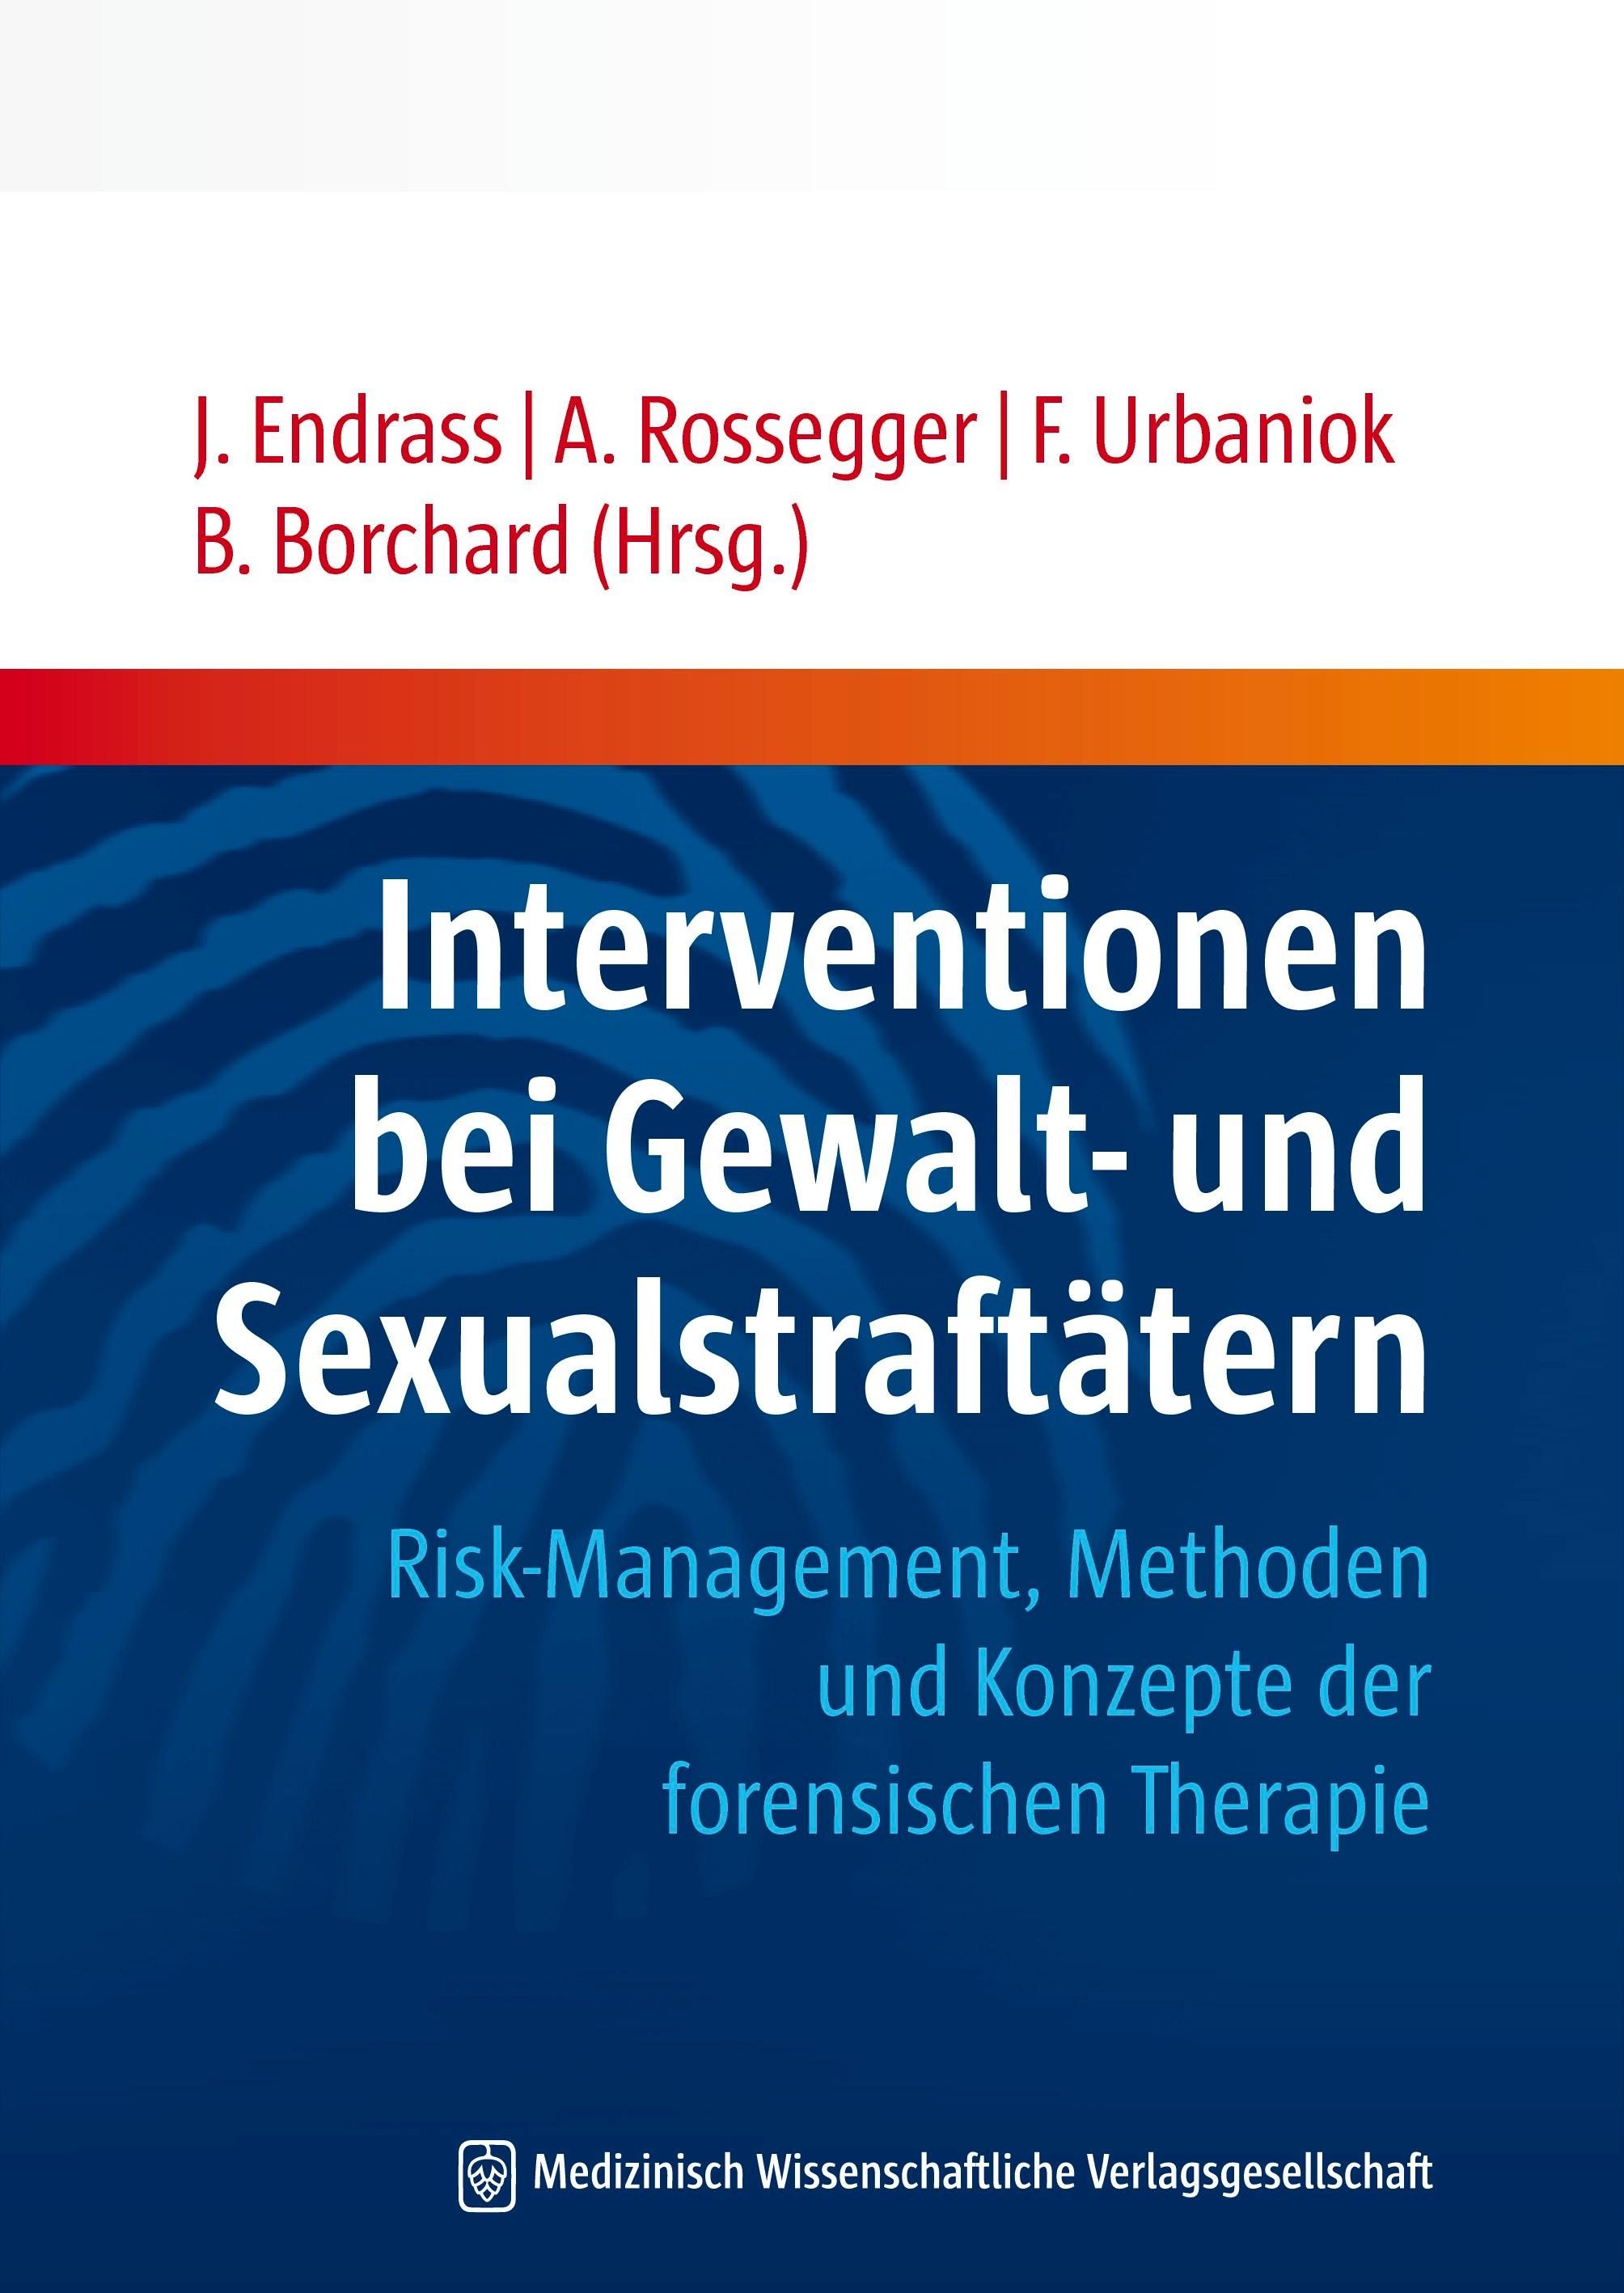 Interventionen bei Gewalt- und Sexualstraftätern, Fachbücher